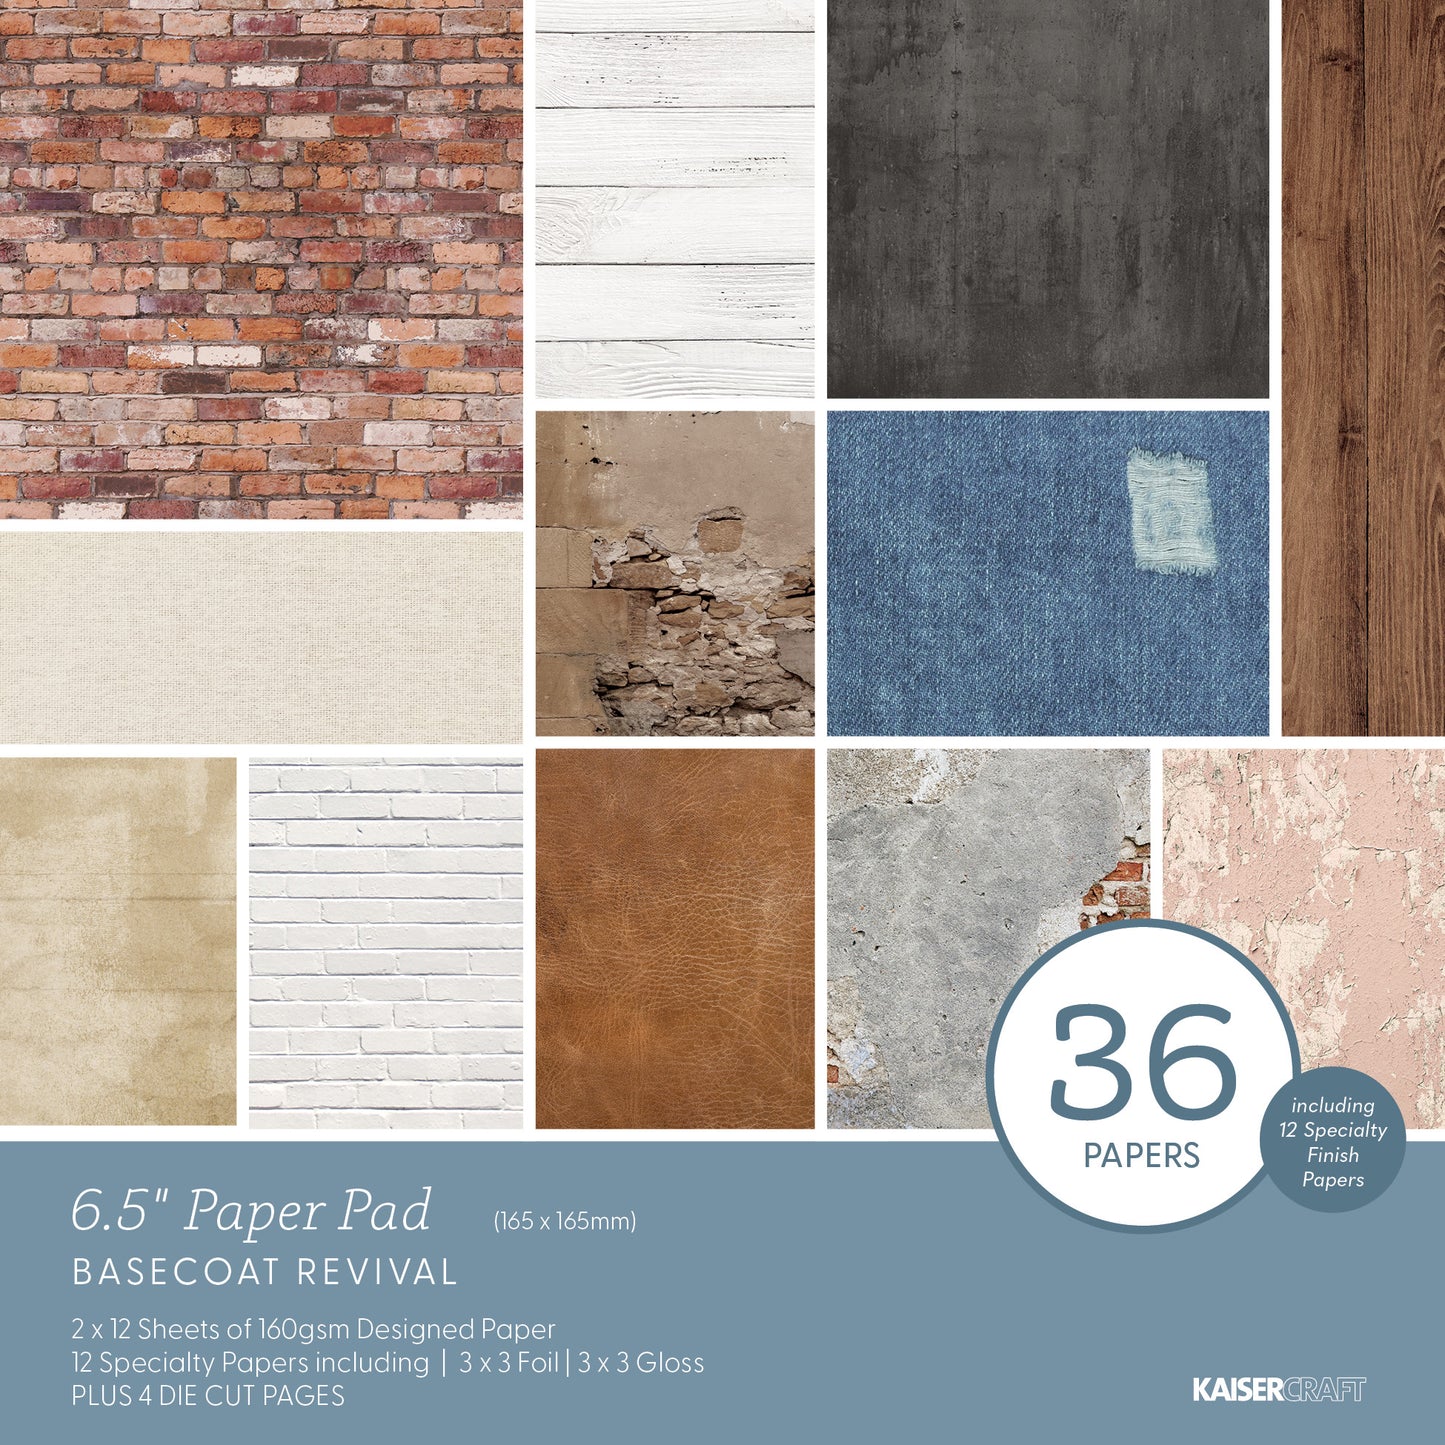 Base Coat Revival 6.5 Paper Pad